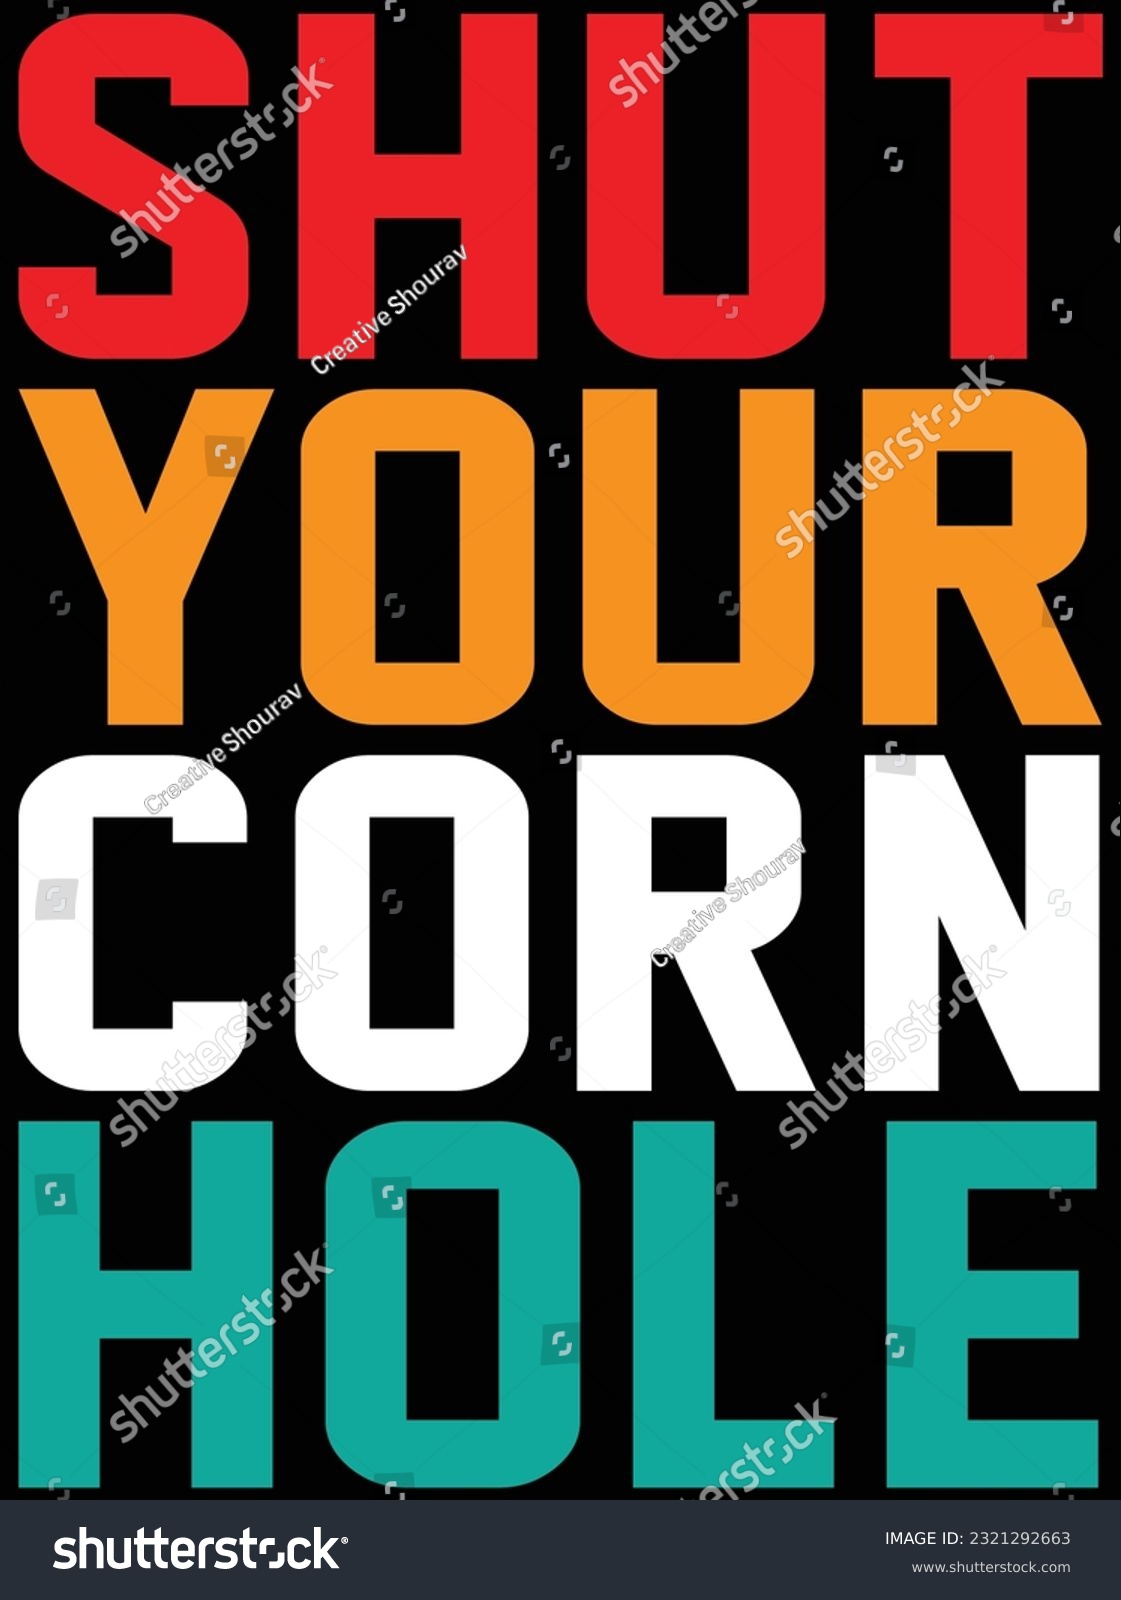 SVG of Shut your corn hole vector art design, eps file. design file for t-shirt. SVG, EPS cuttable design file svg